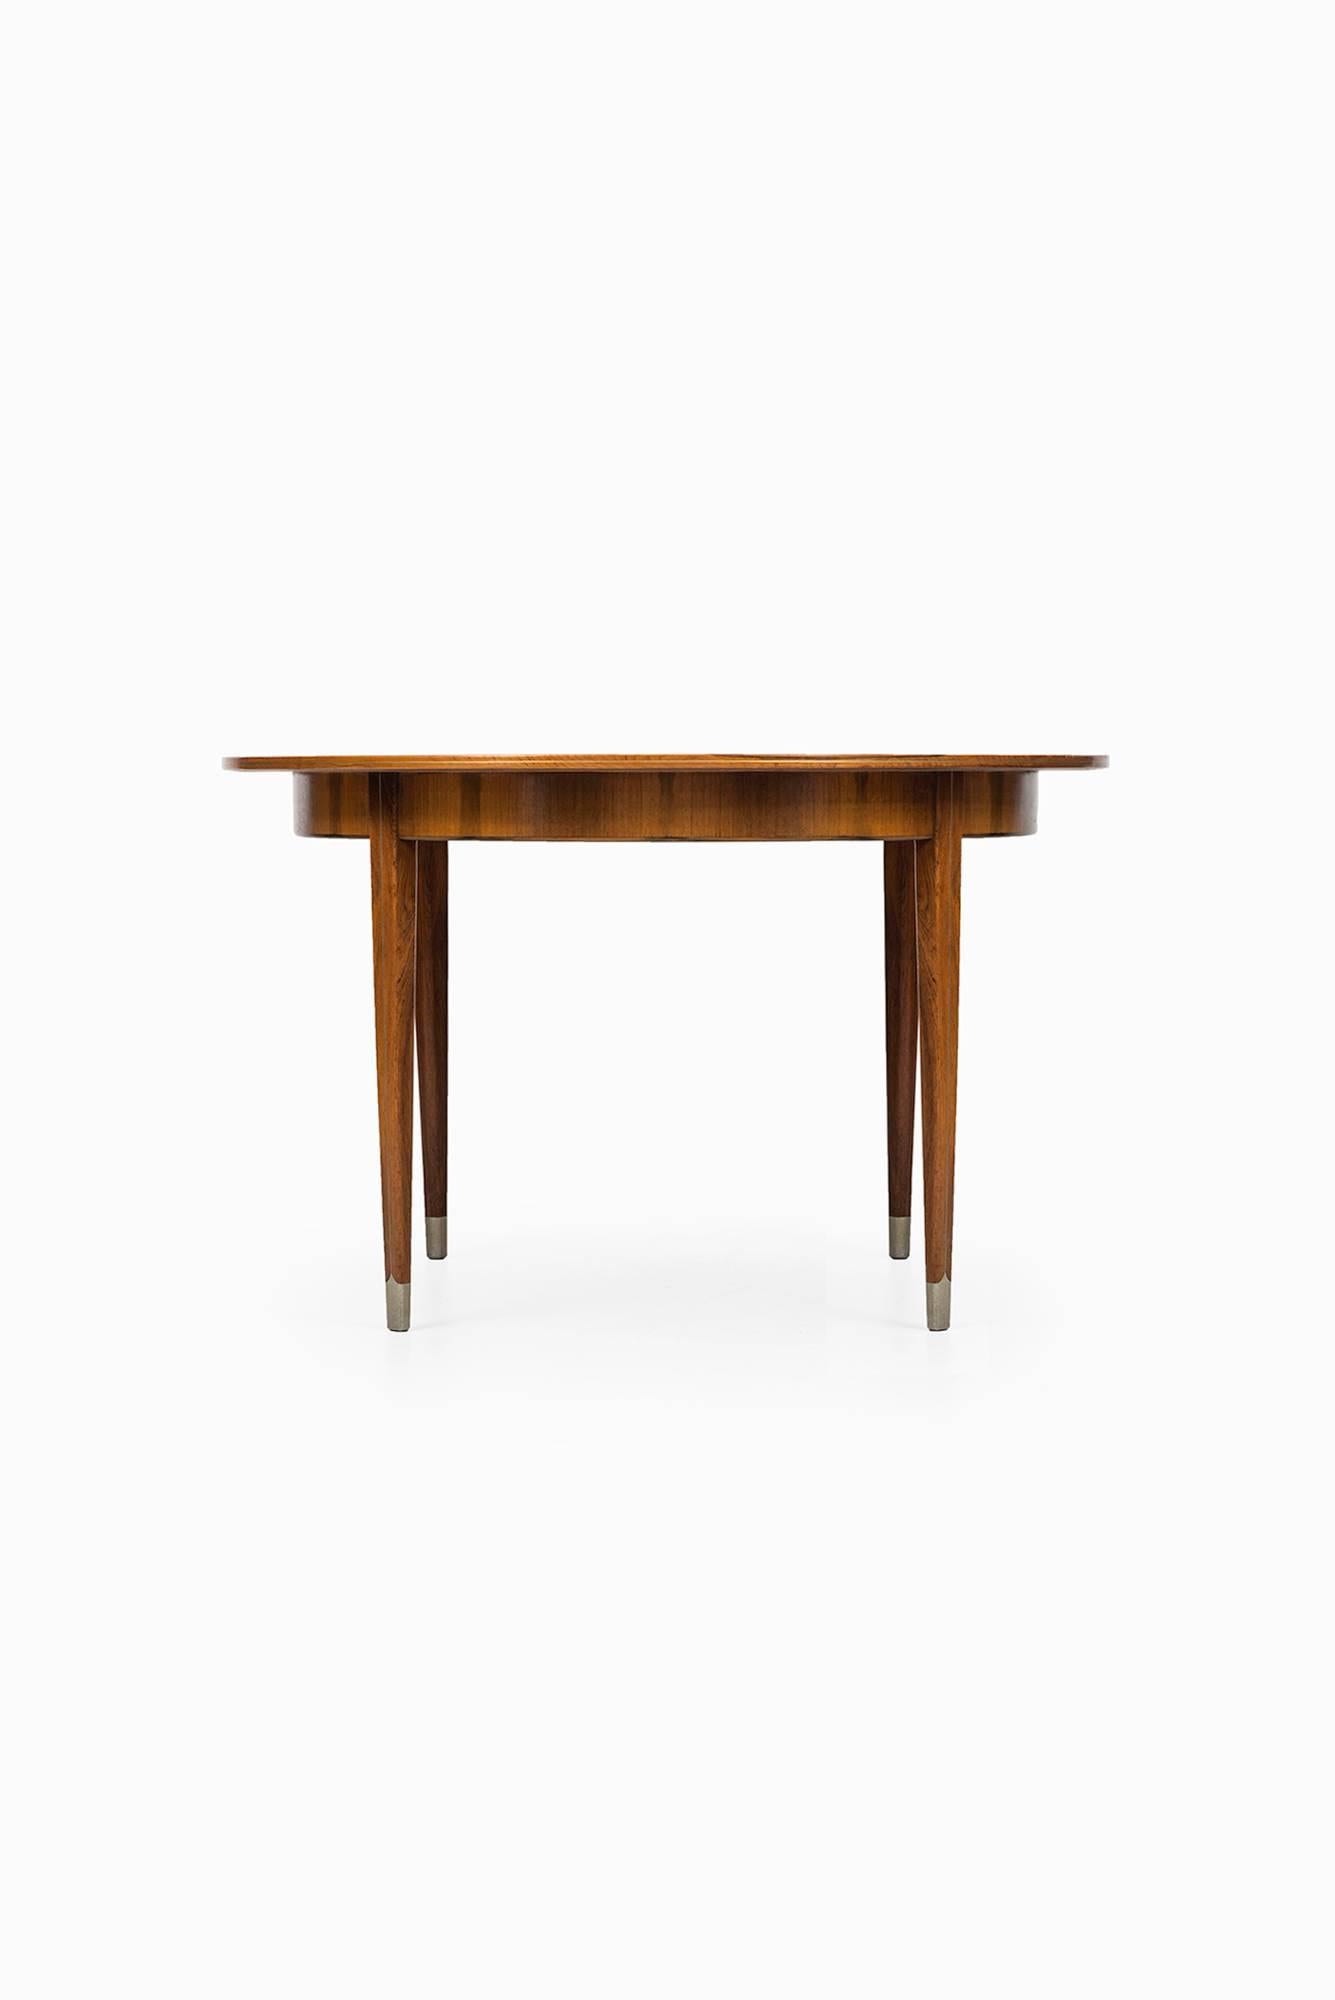 Danish Rare Dining Table designed by Agner Christoffersen in Denmark